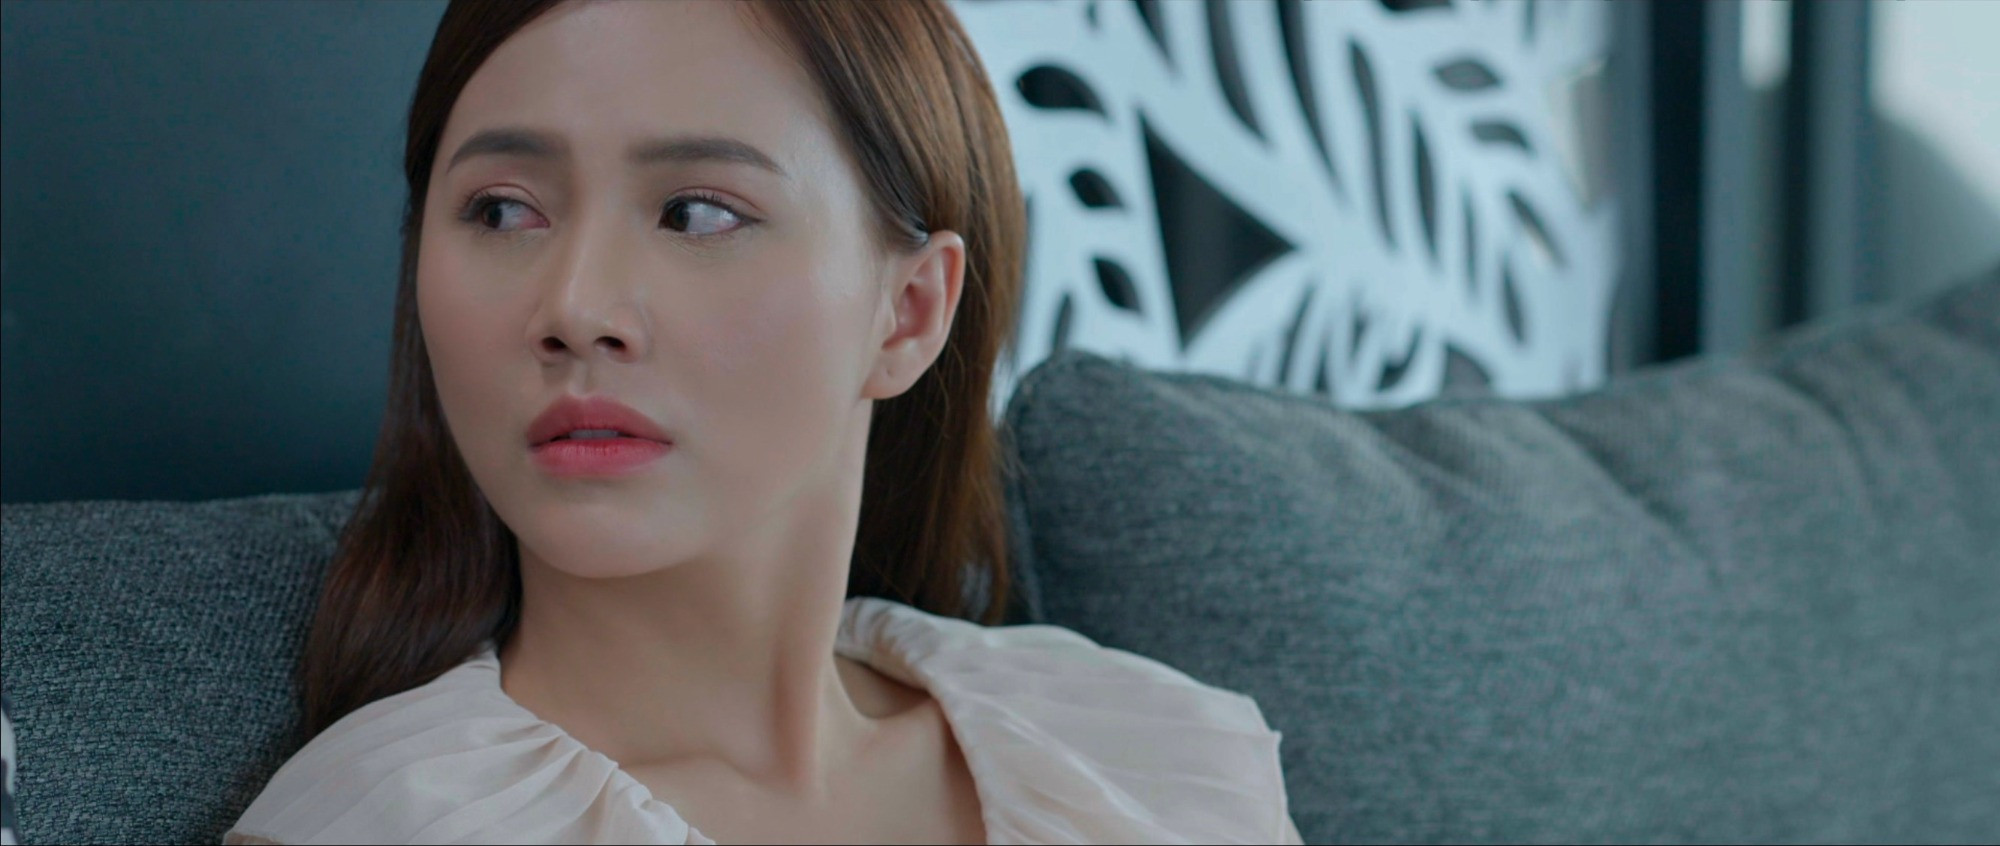 Kết thúc phát sóng, phim của NSND Lê Khanh vẫn nhận 'bão' lời chê - Ảnh 6.